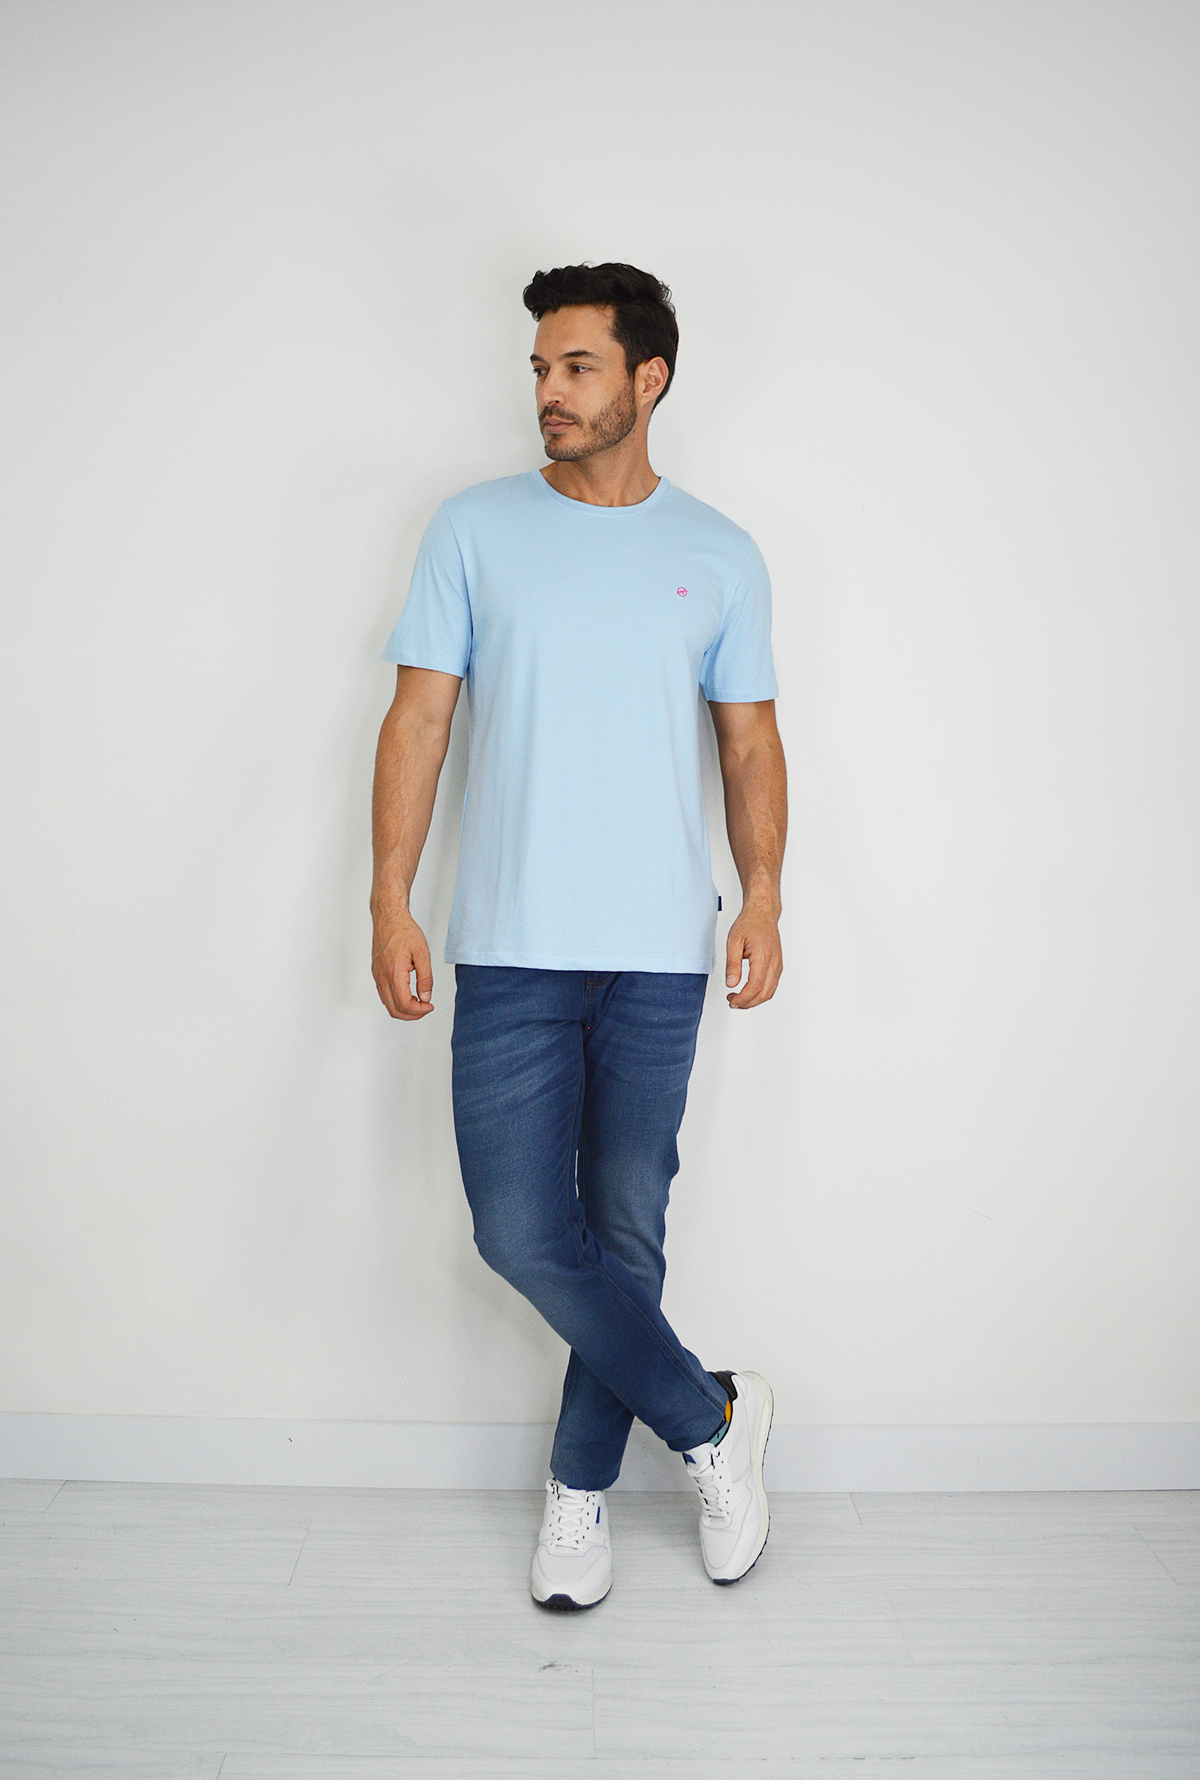 Camiseta Básica Azul Claro Para Hombre TSB002